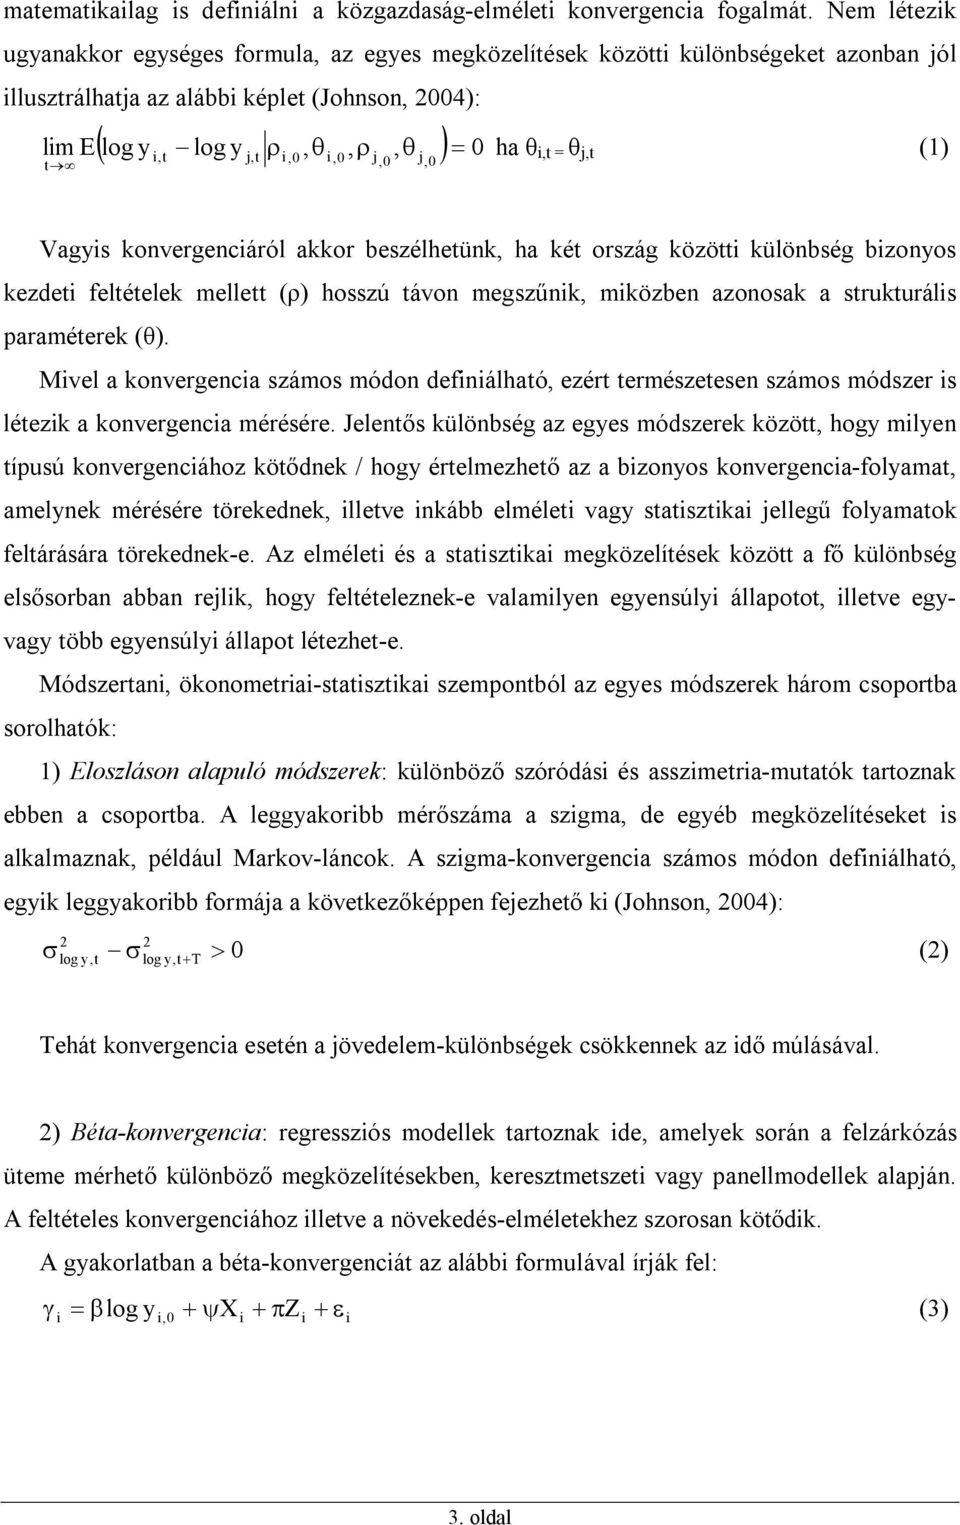 Gáspár Attila 1 : Klub-konvergencia mérése a világ országaiban - PDF  Ingyenes letöltés